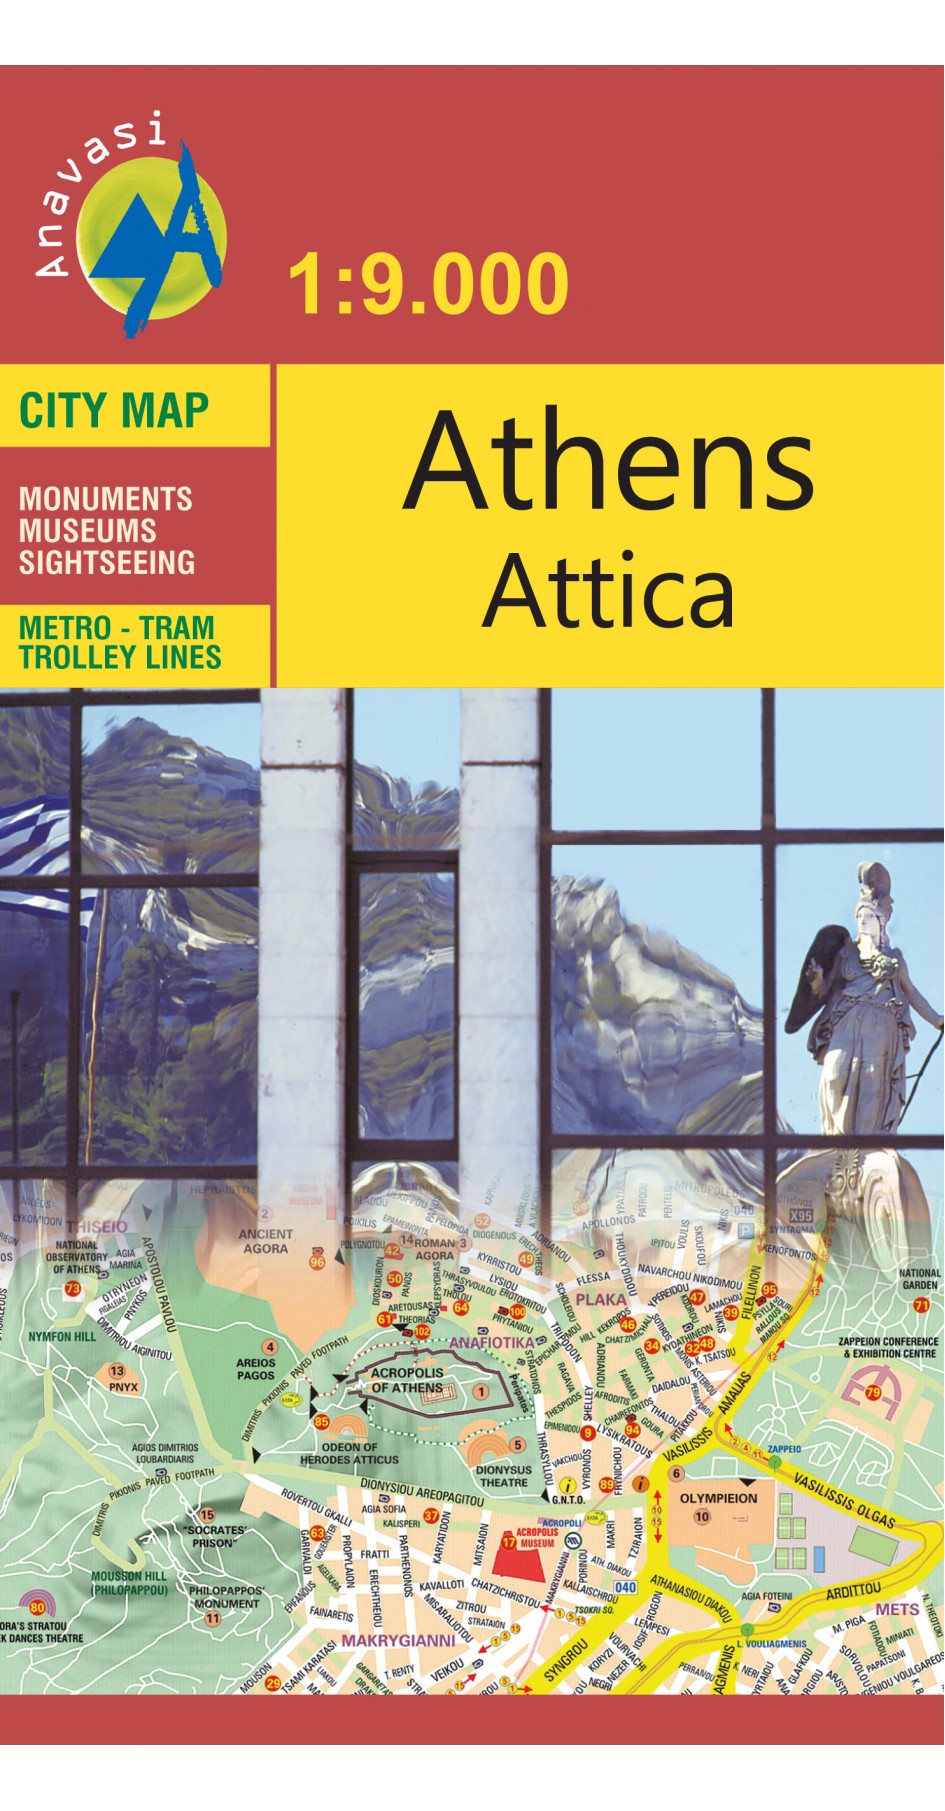 Athens Attica, Athens city map